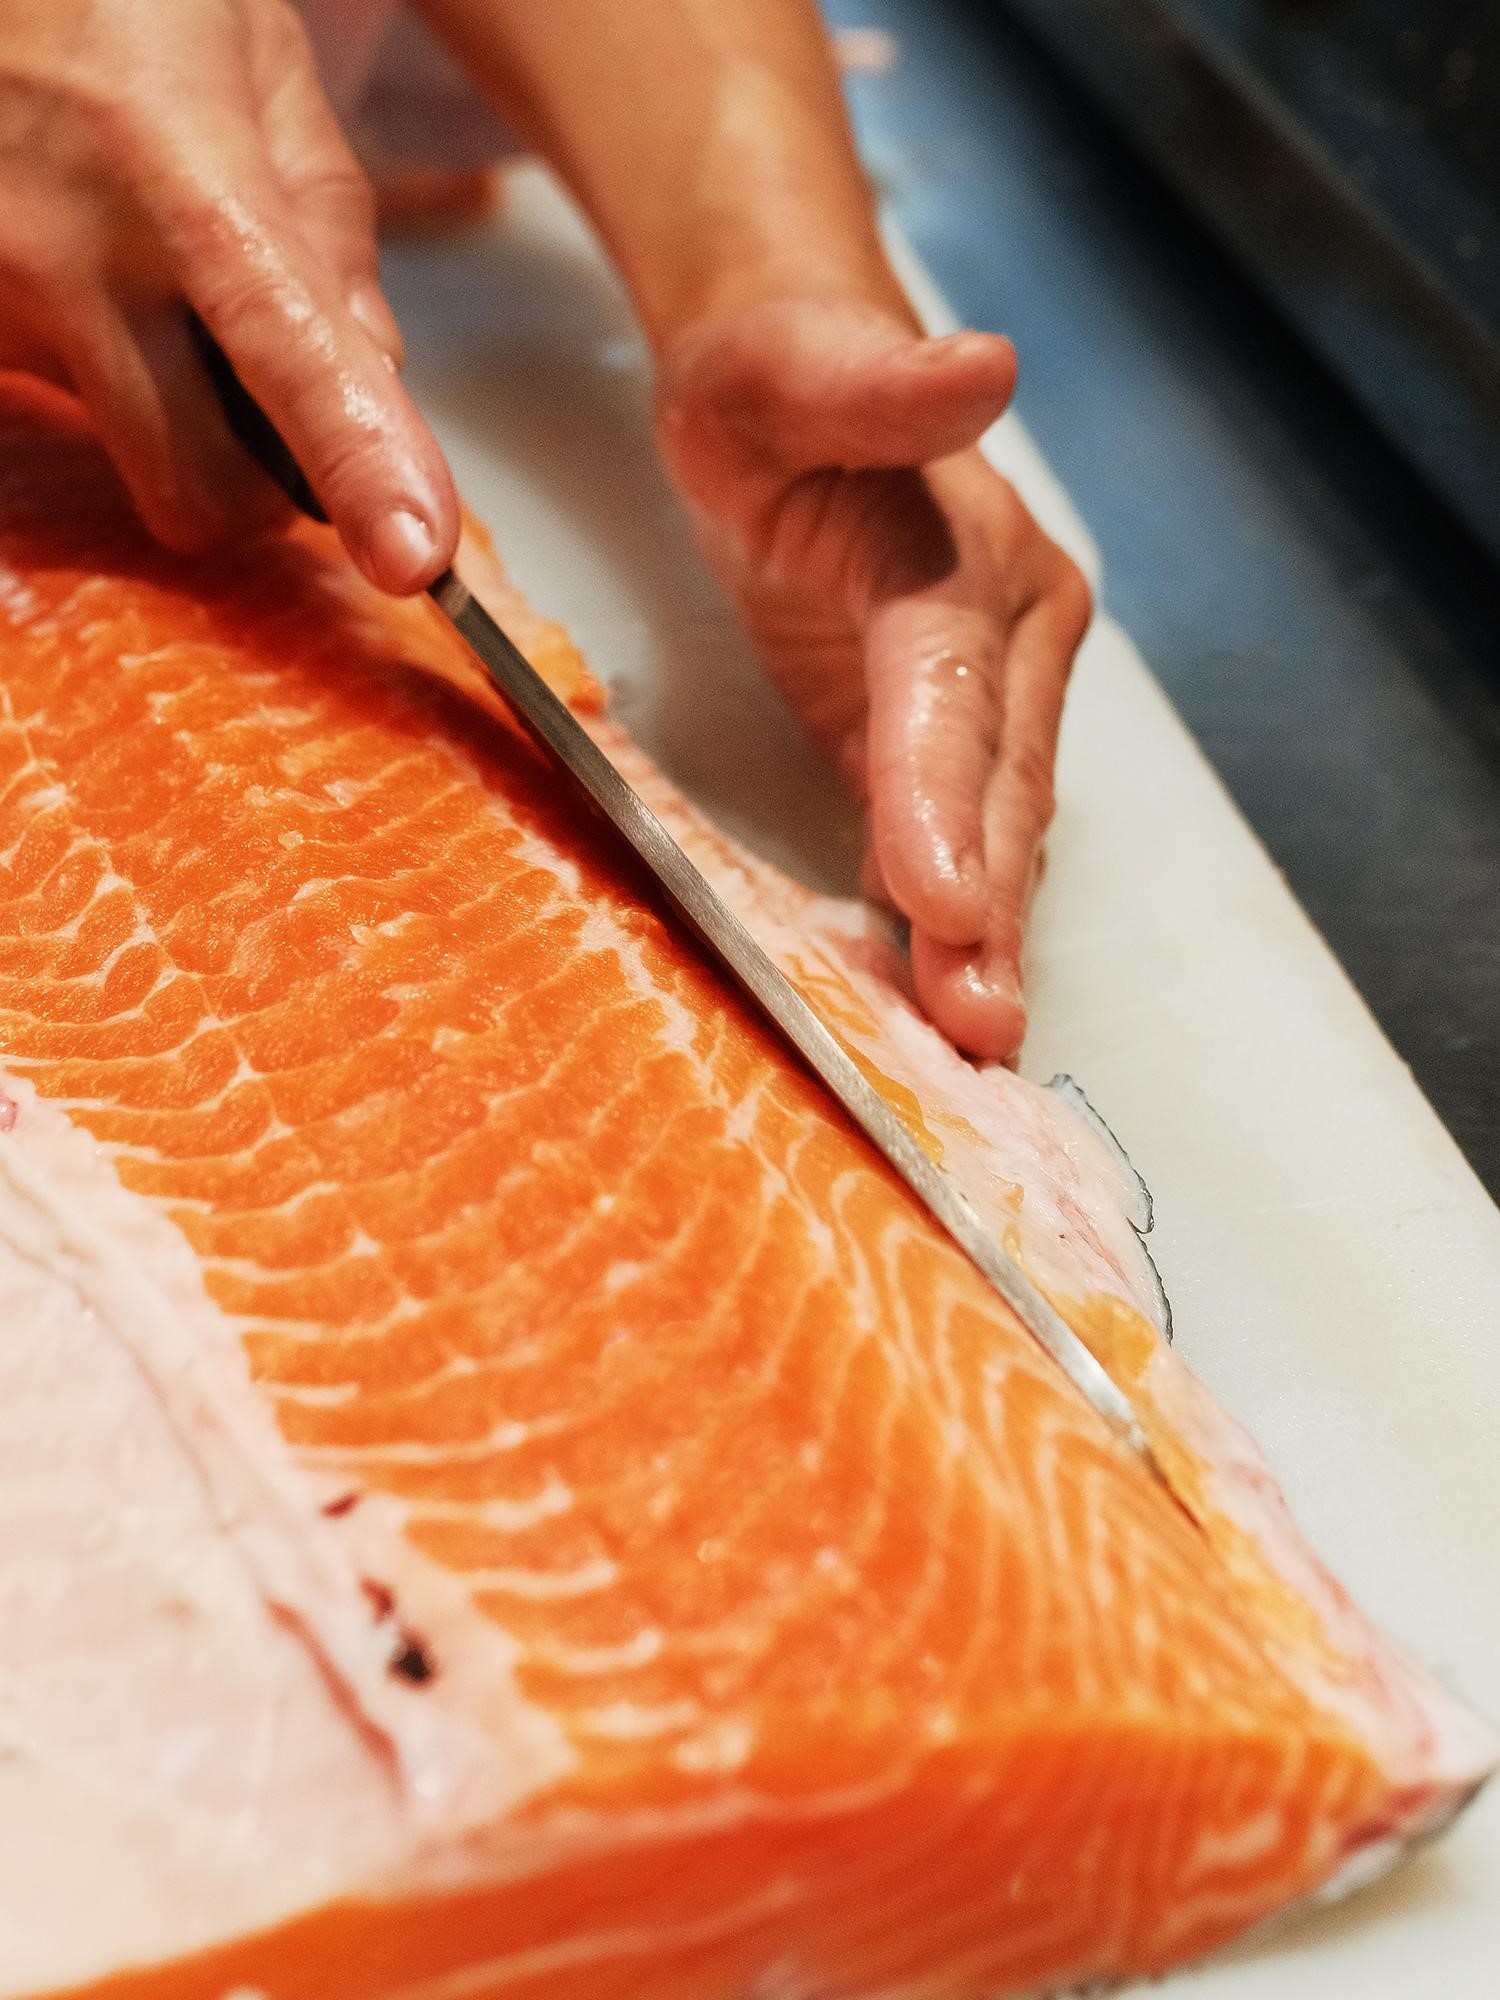 Thử thách làm cá hồi ‘size khủng’ lên đến 16kg cùng bếp trưởng Nhật Bản tại Sushi Hokkaido Sachi